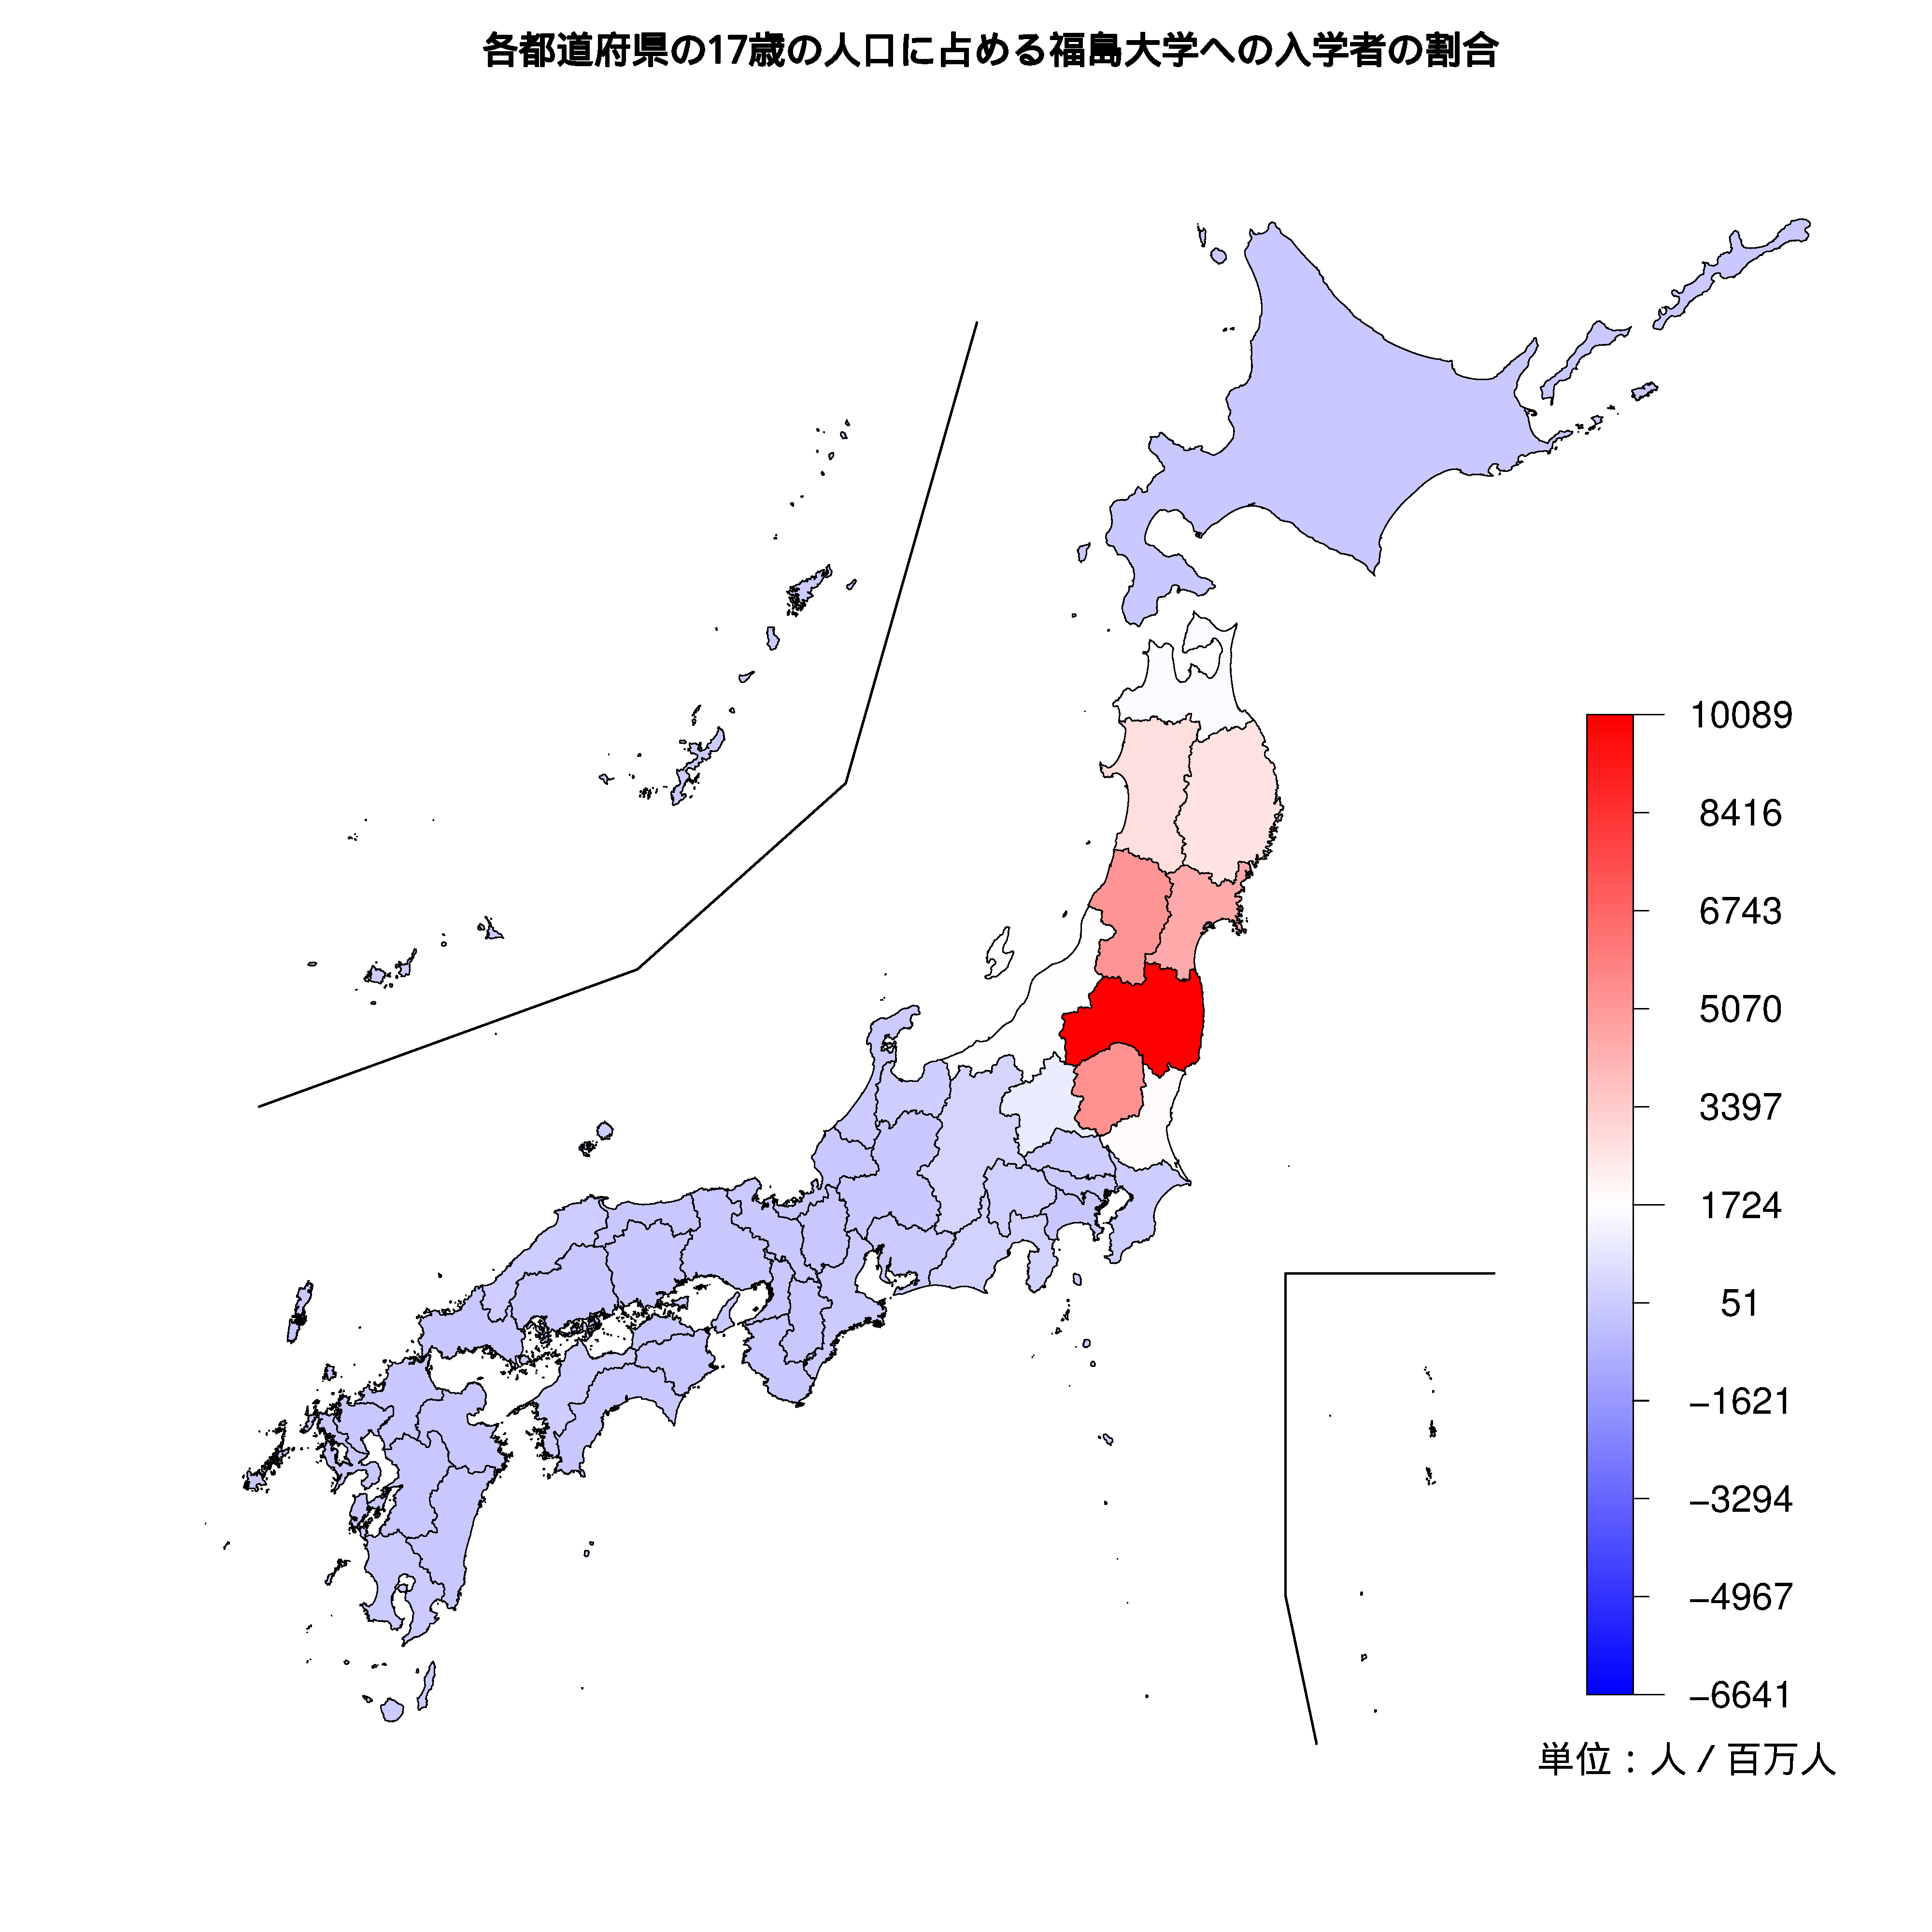 福島大学への入学者が多い都道府県の色分け地図